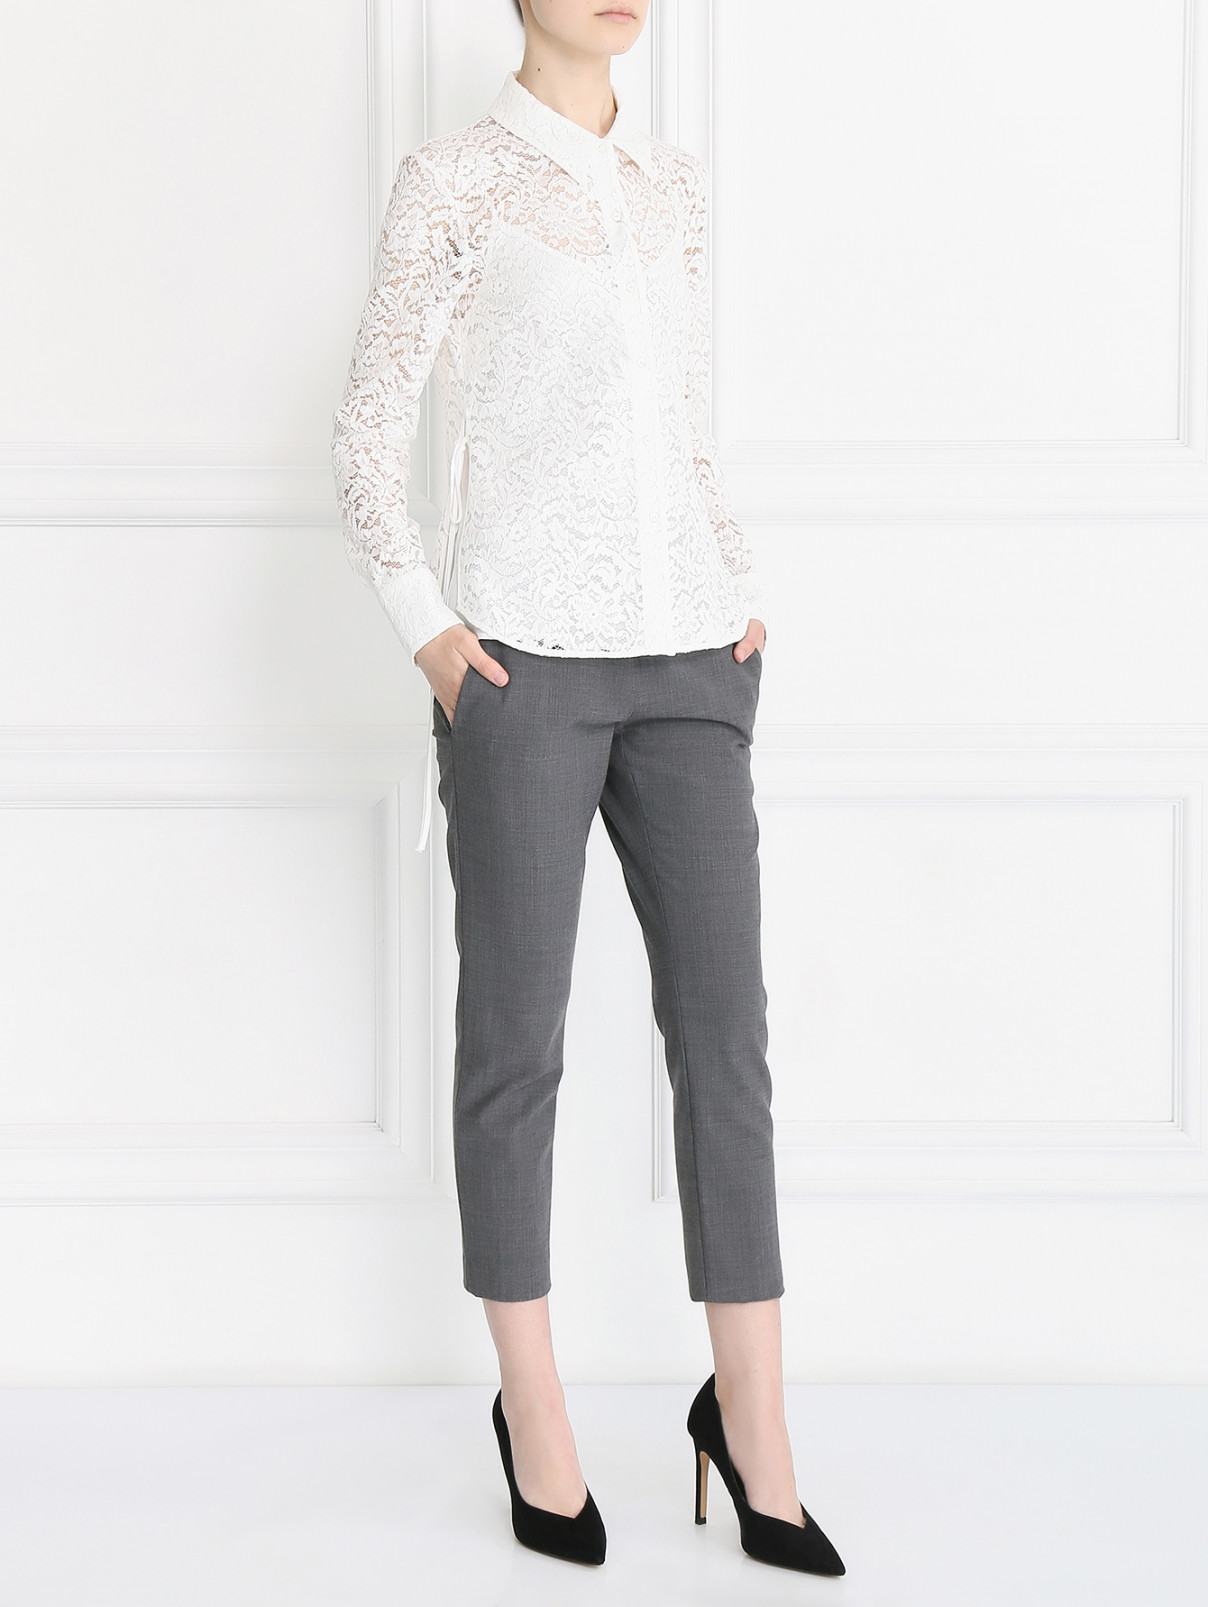 Кружевная блуза из хлопка Max Mara  –  Модель Общий вид  – Цвет:  Белый